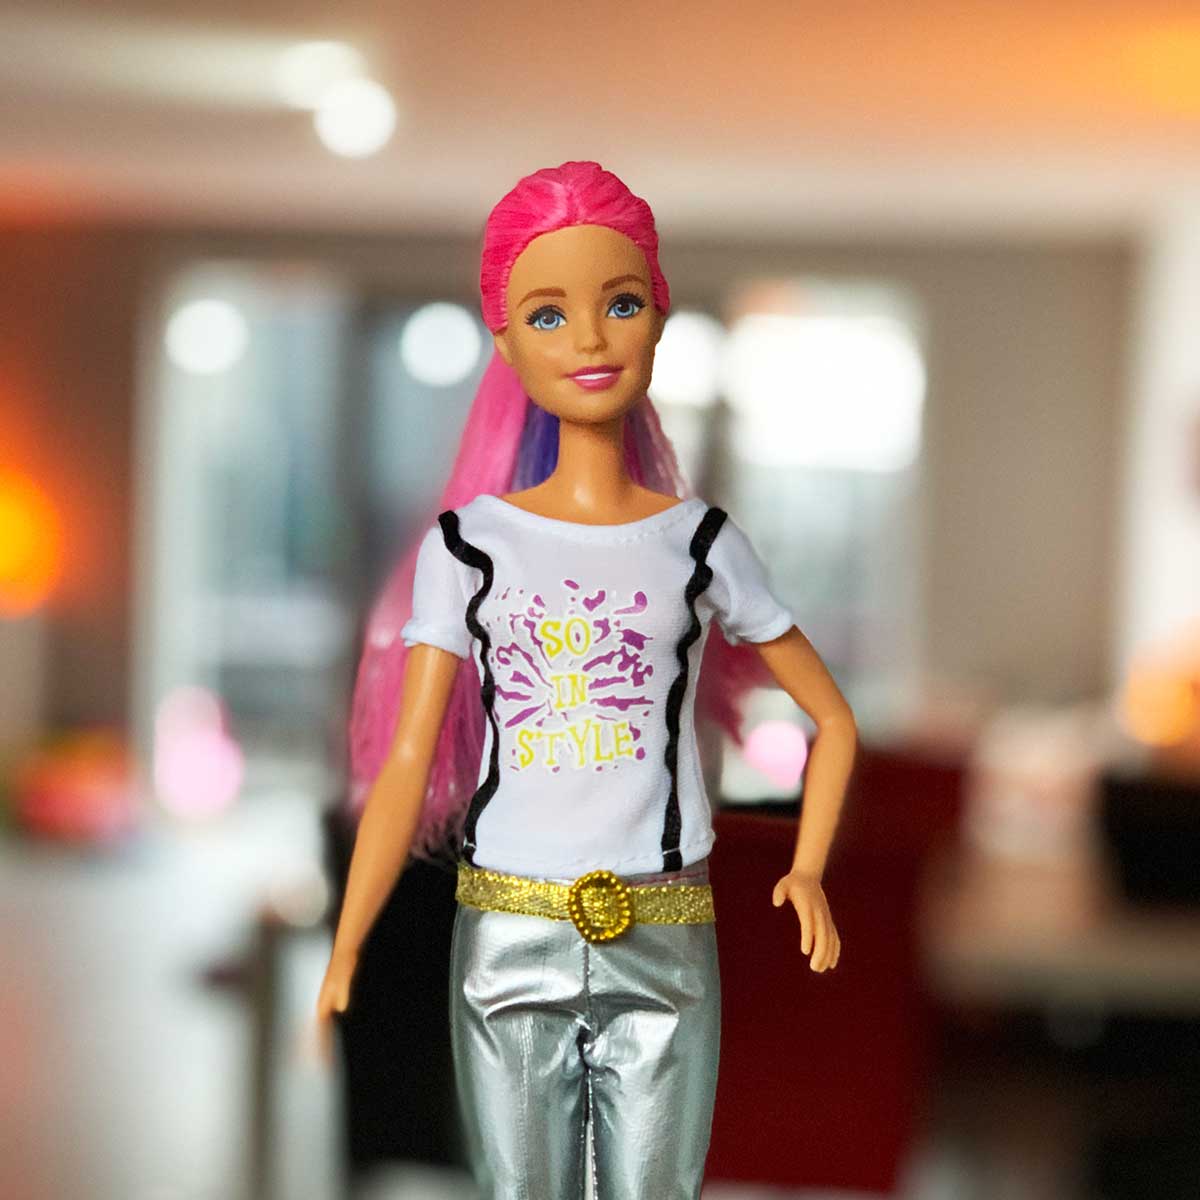 Barbie outfit met bedrukt wit shirt en zilveren broek met gouden riem